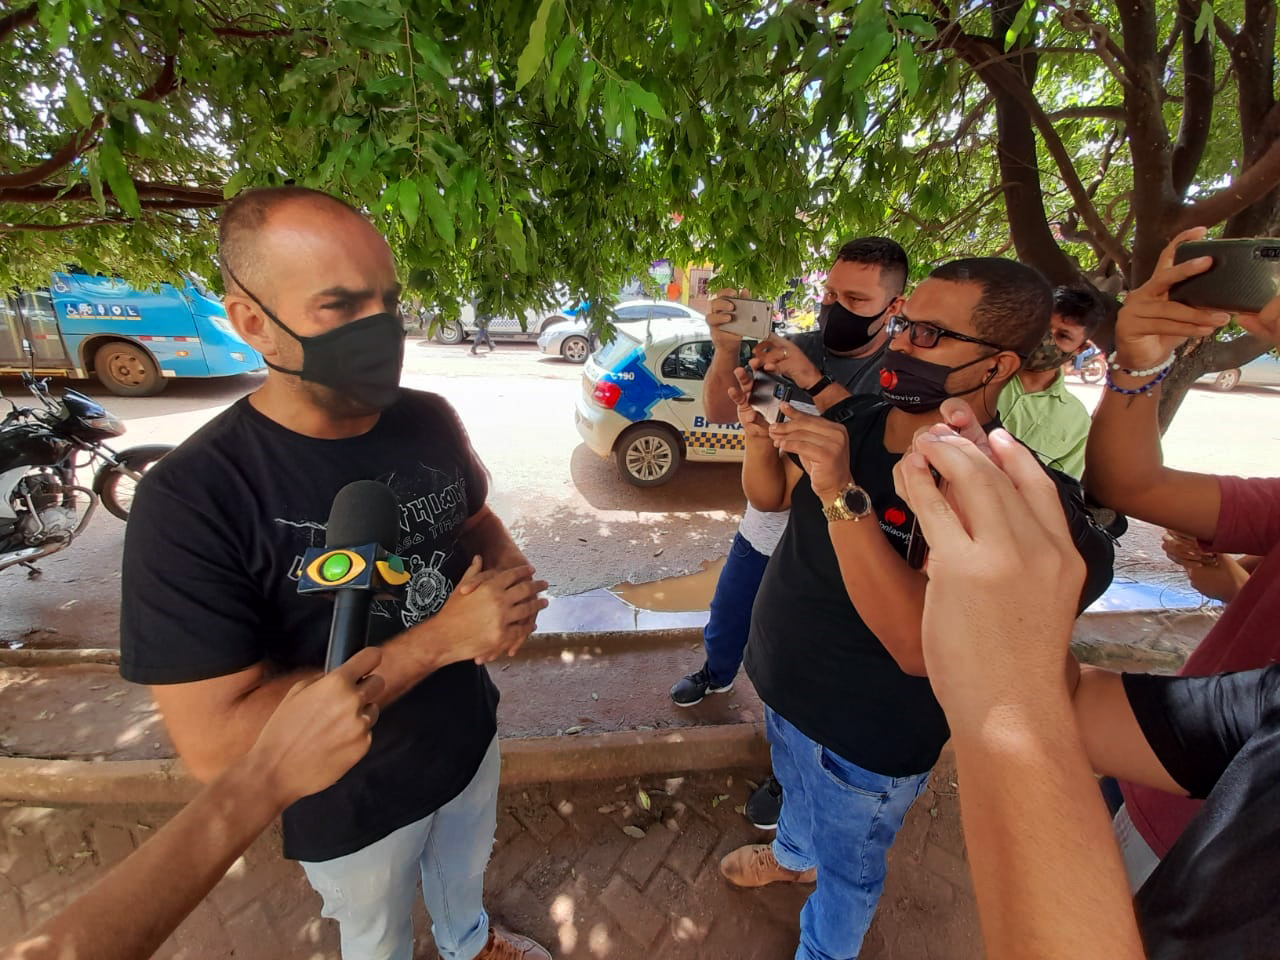 MOMENTOS DE TENSÃO - Vigilante notou que gerente do BB estava diferente e acionou apoio - ASSISTA! - News Rondônia